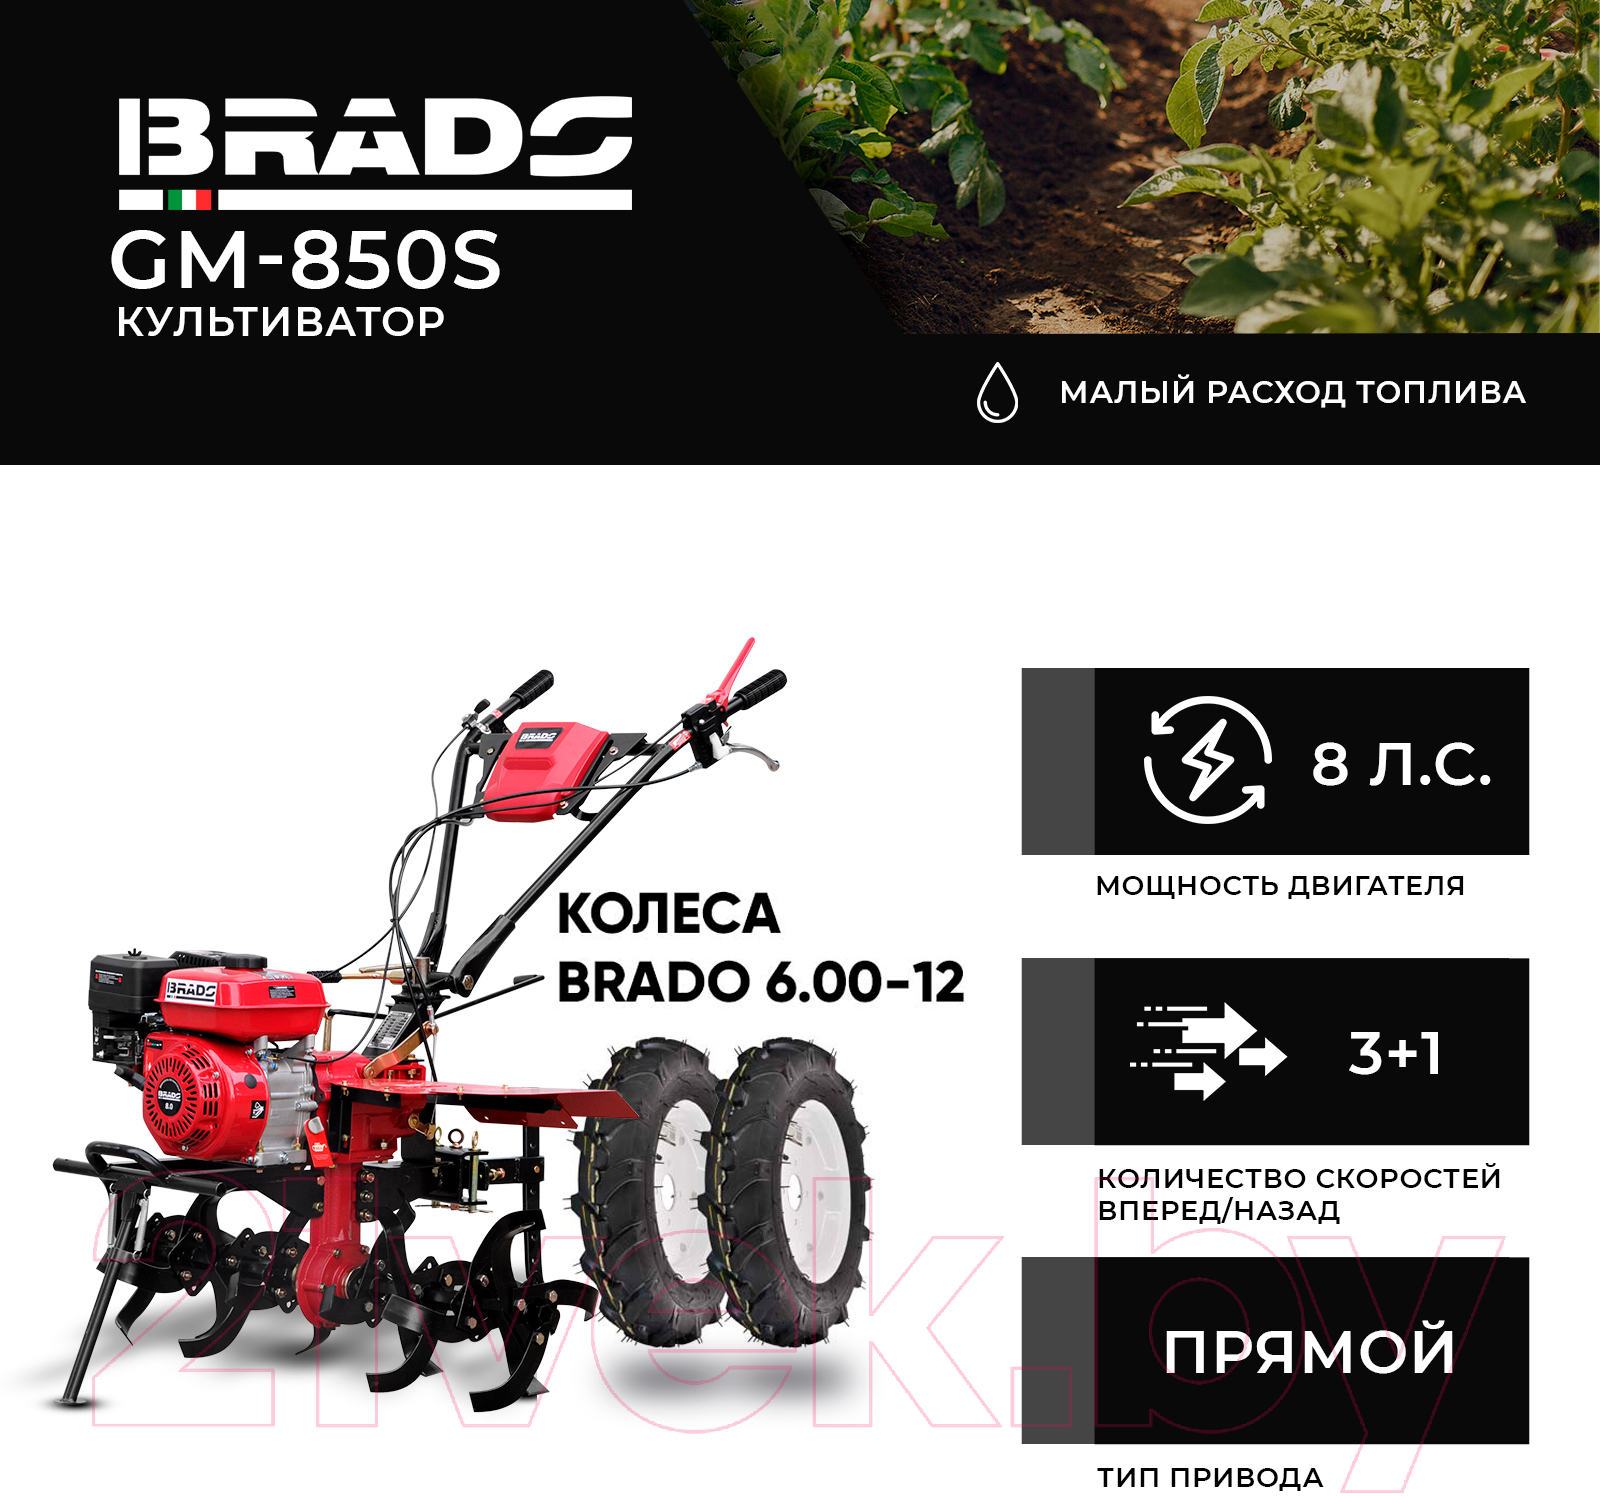 Мотокультиватор Brado GM-850S + колеса 6.00-12